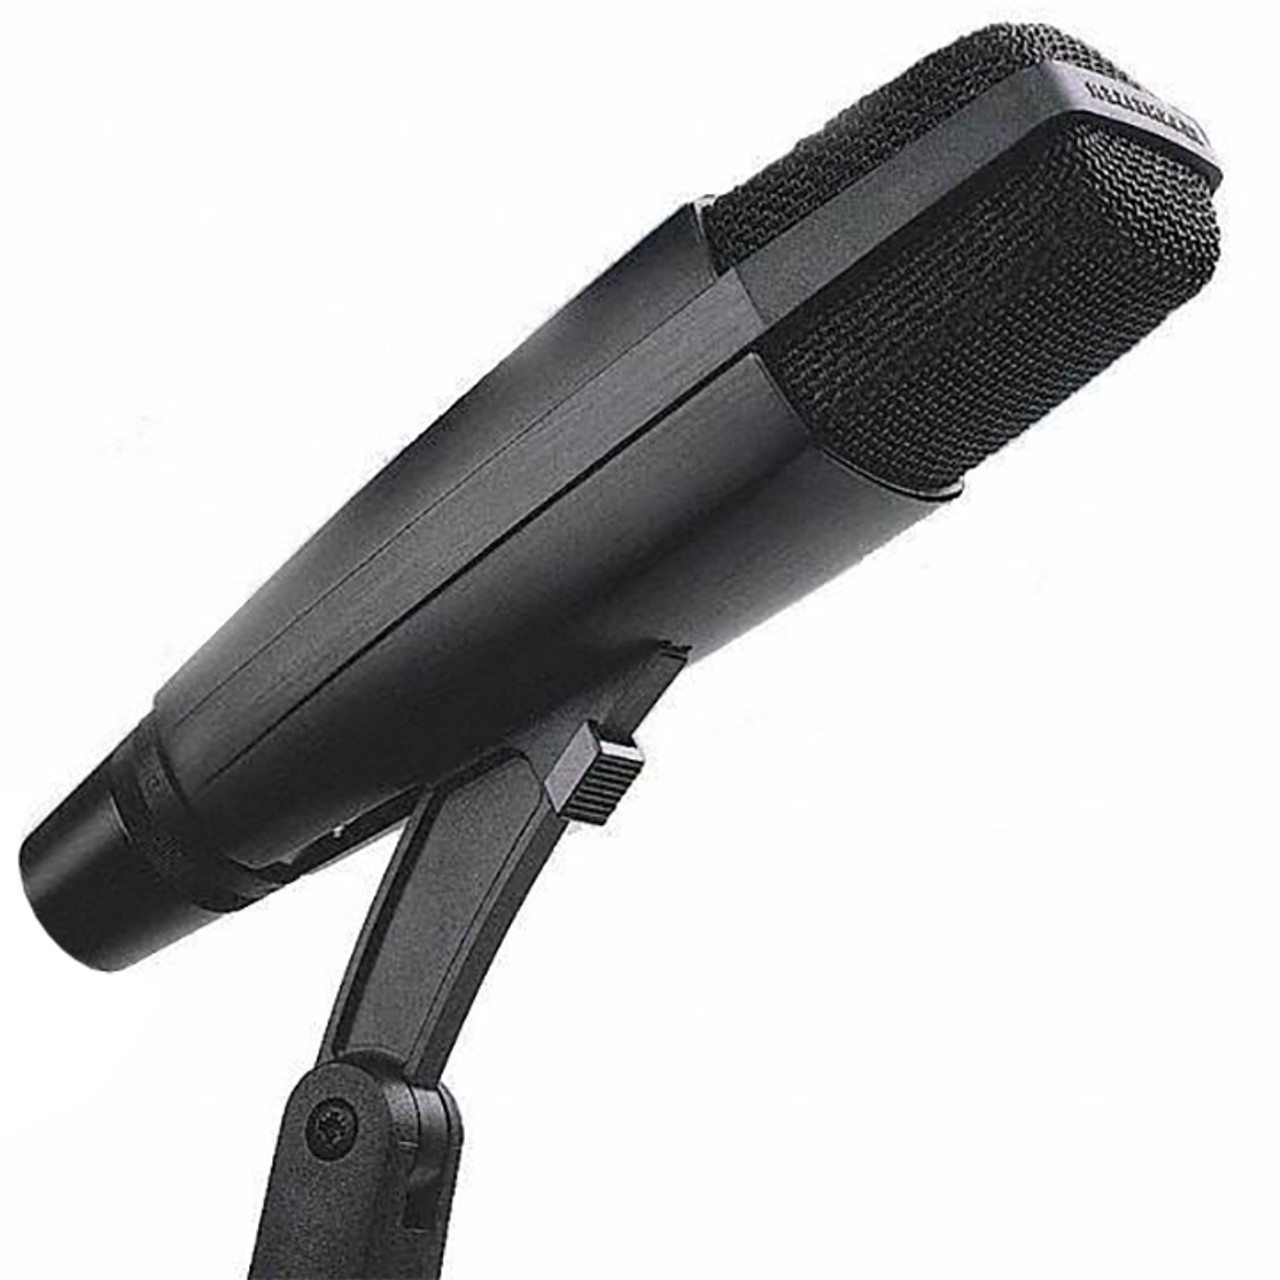 Sennheiser MD421 II Dynamic Microphone